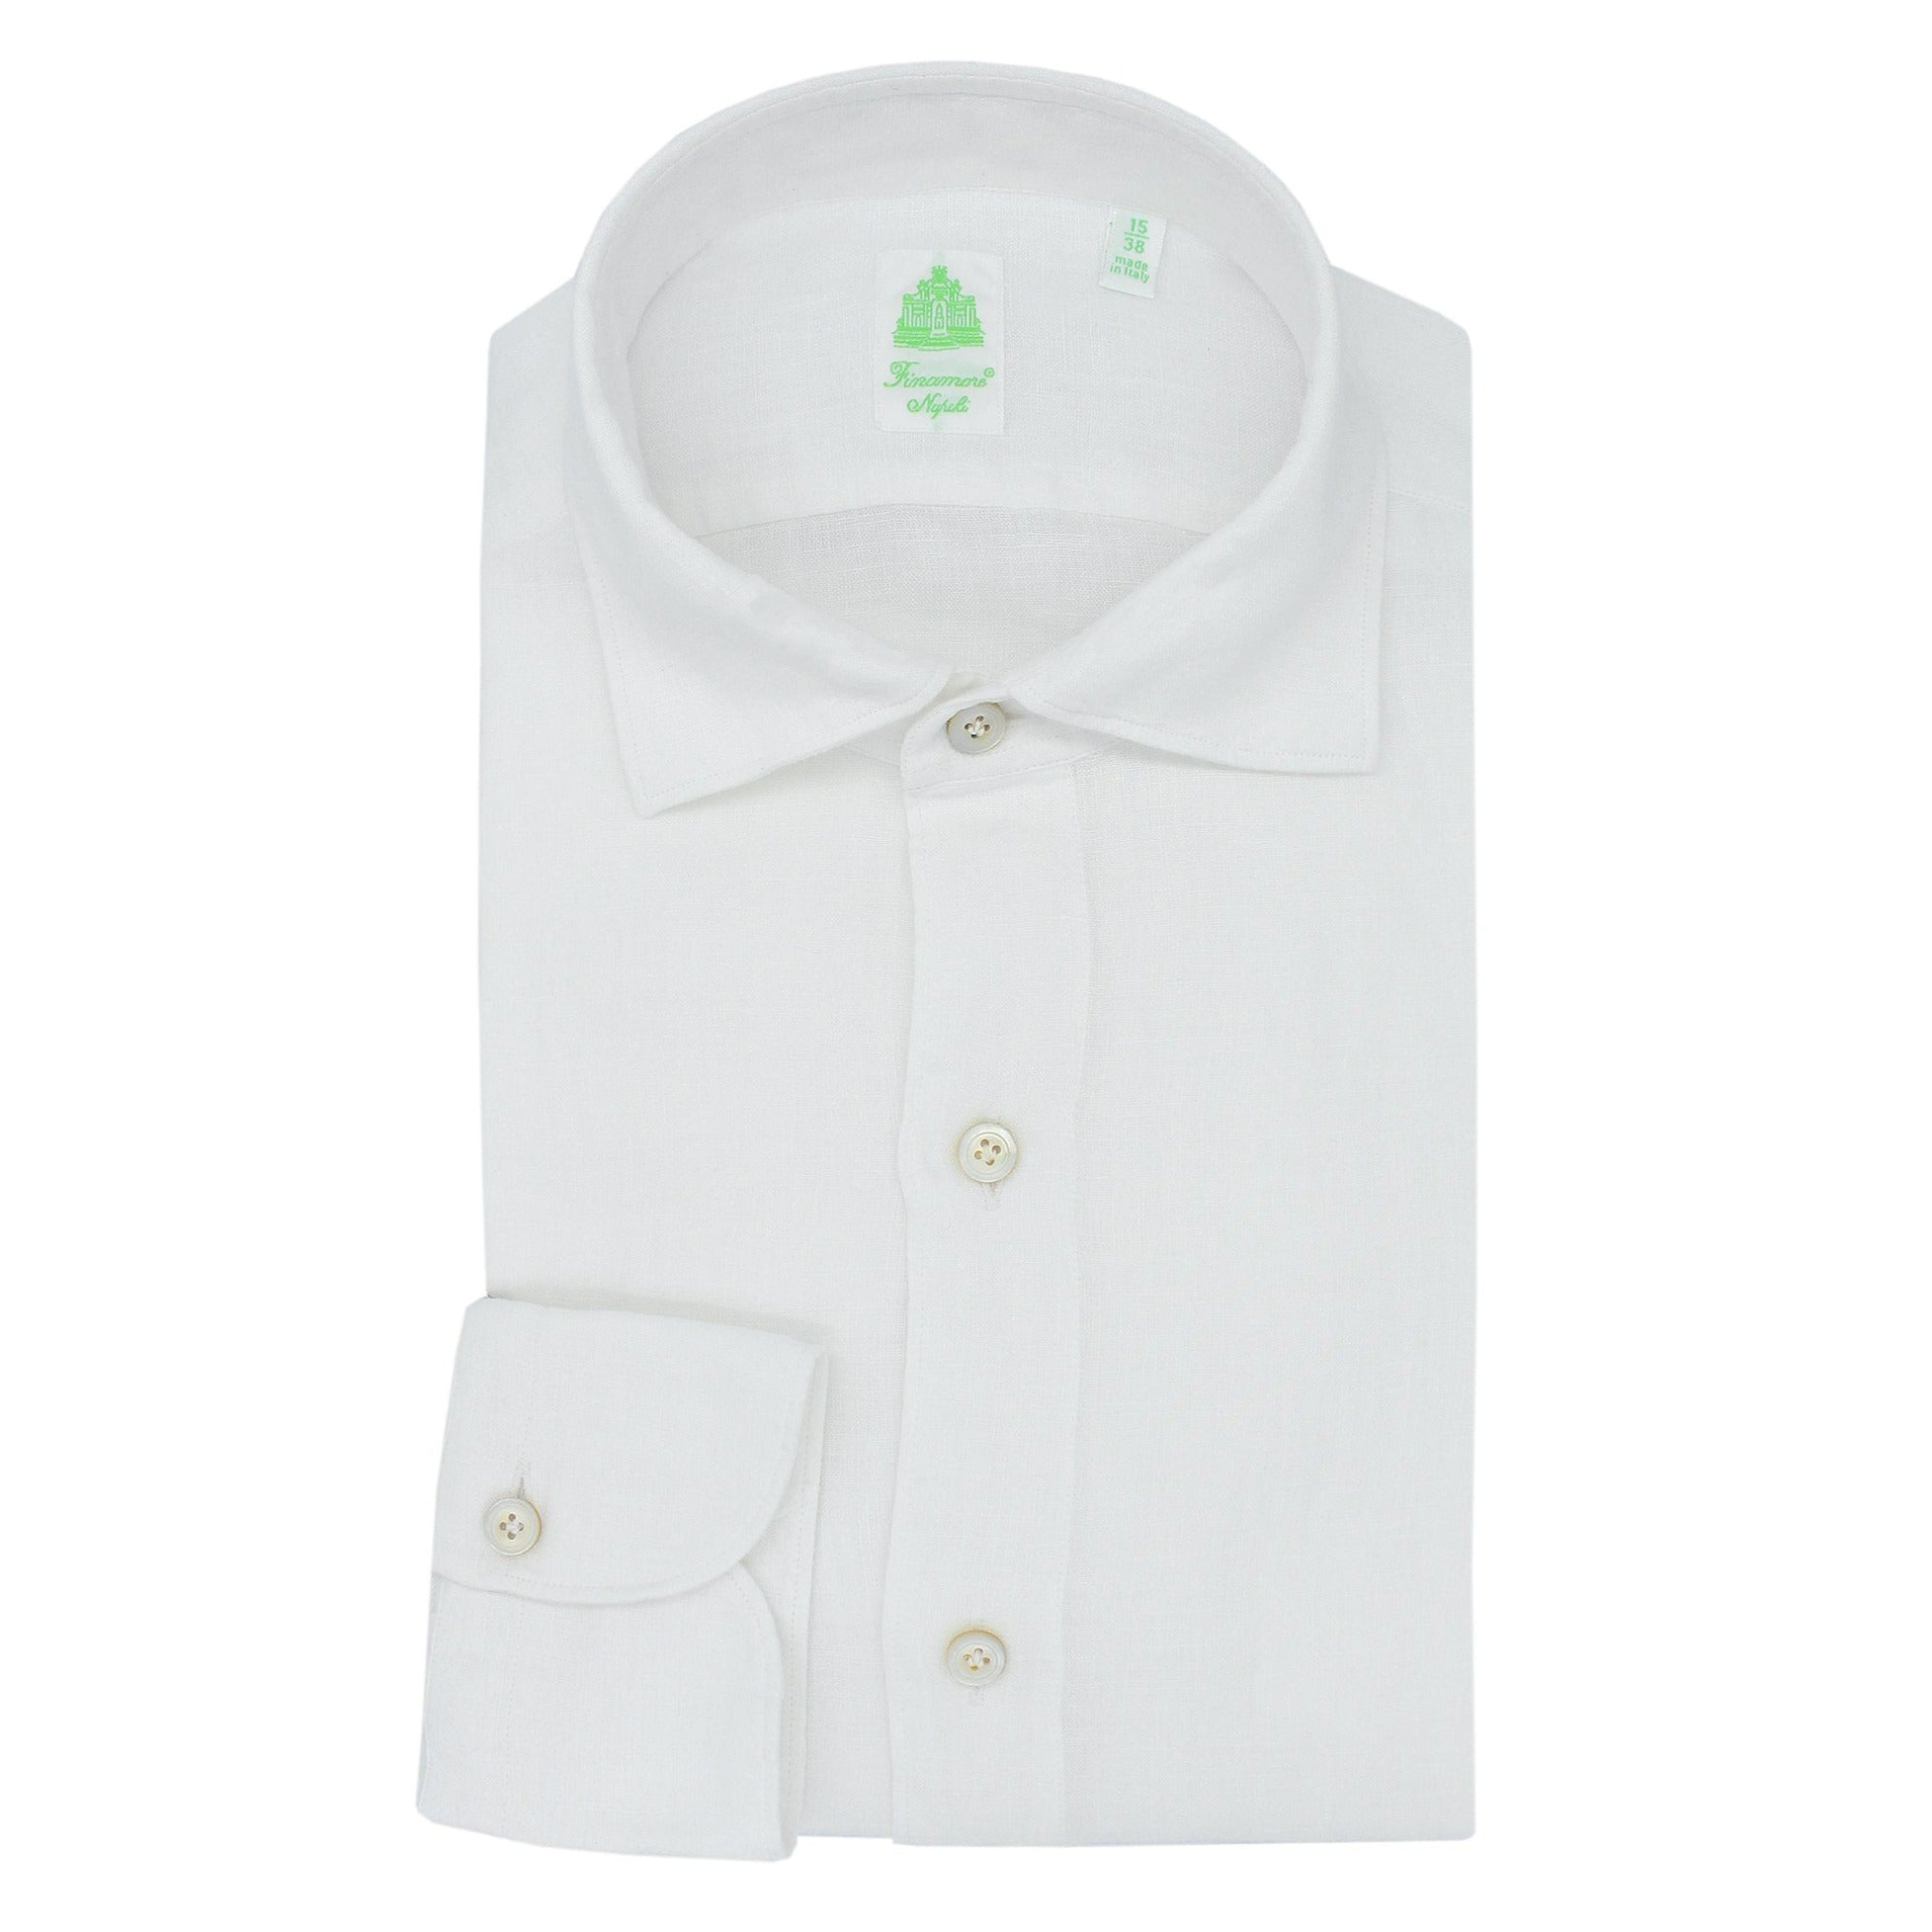 Slim fit linen sports shirt Finamore 1925 white